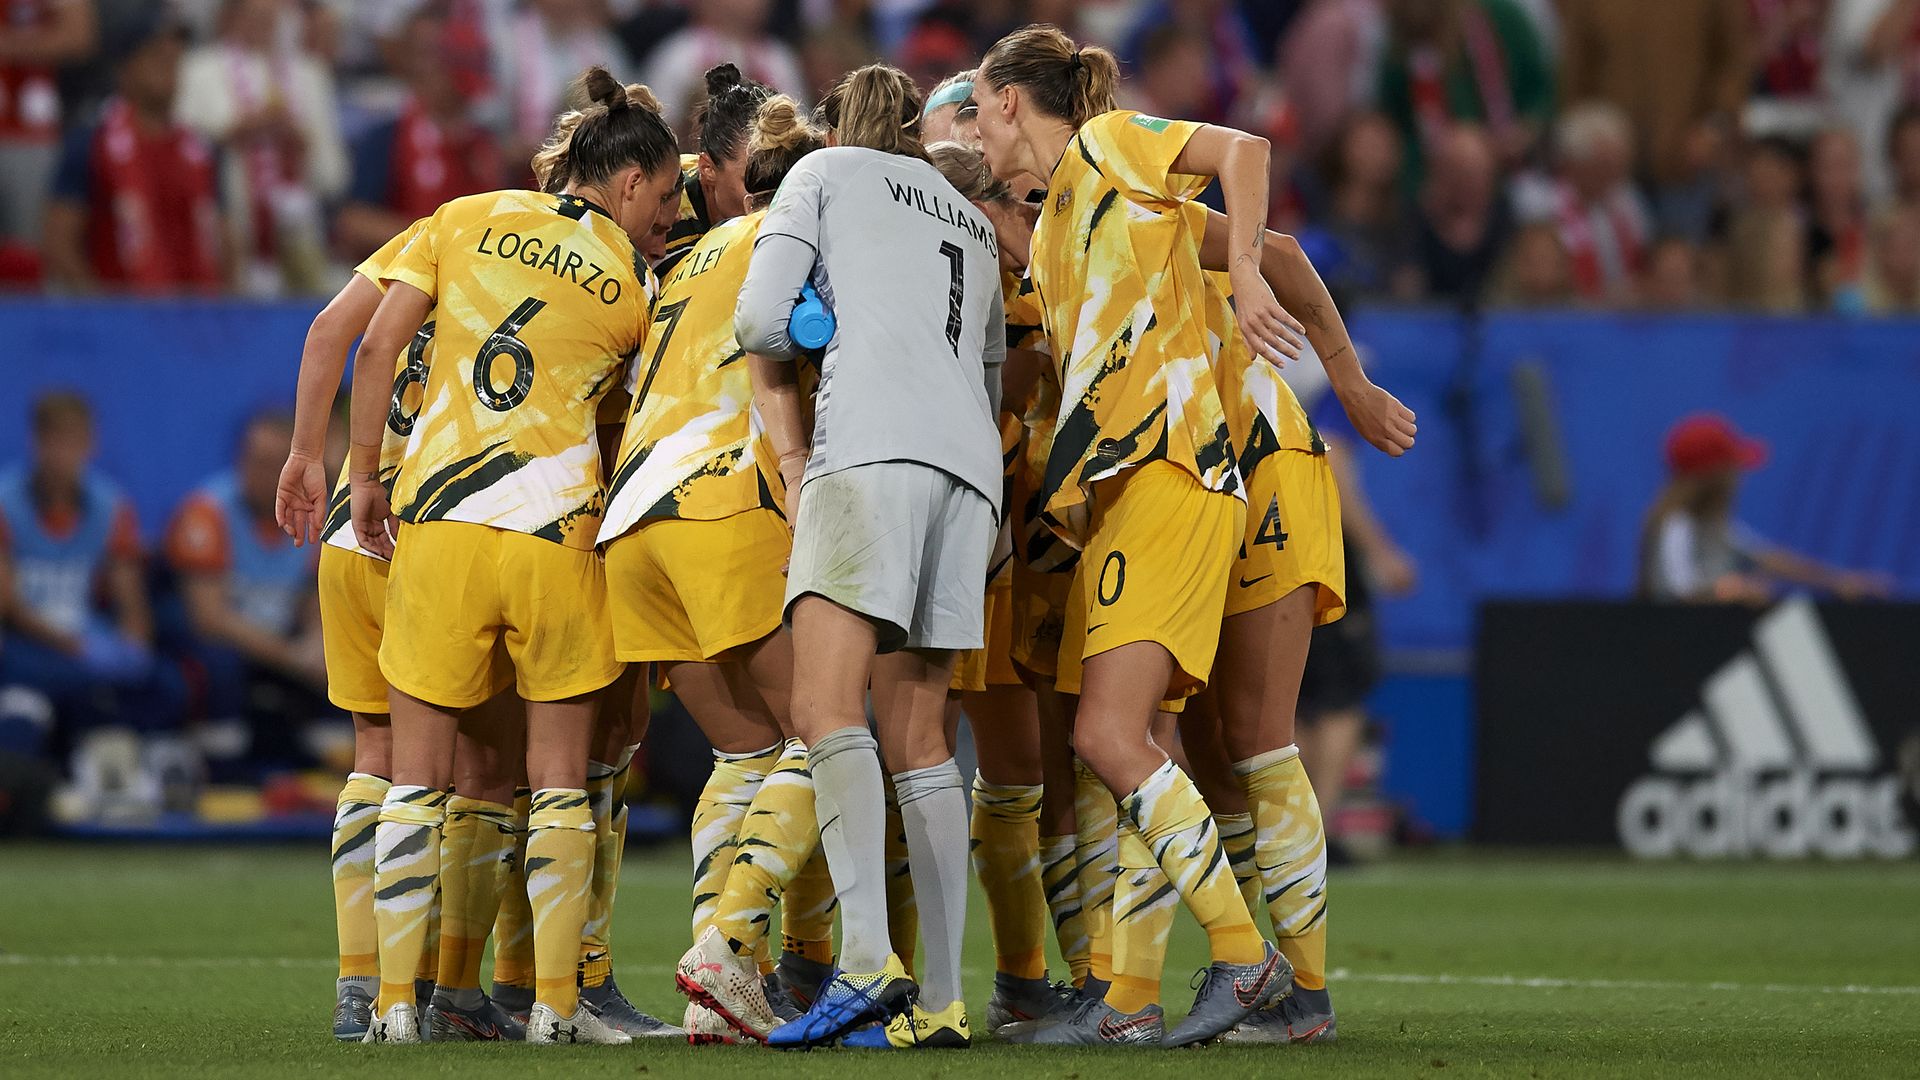 The Australian womens soccer team huddles before a match.